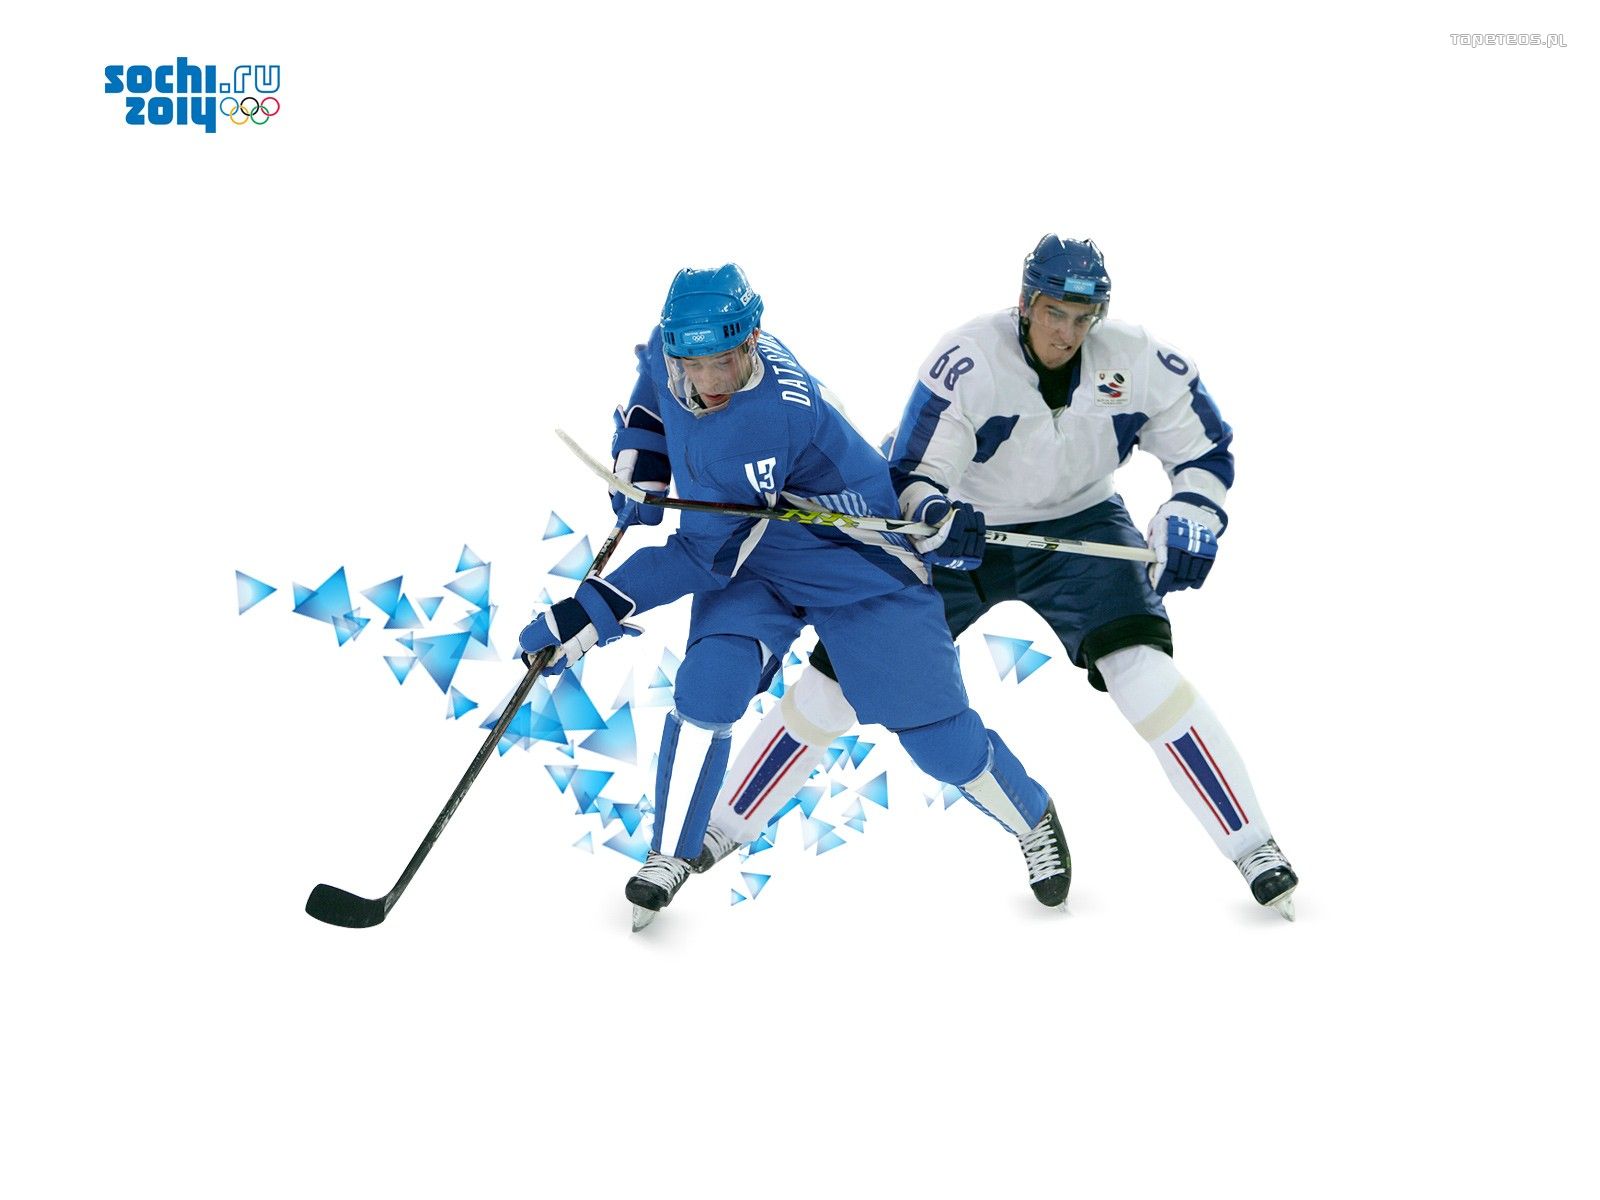 Soczi 2014 Zimowe Igrzyska Olimpijskie 004 Hokej